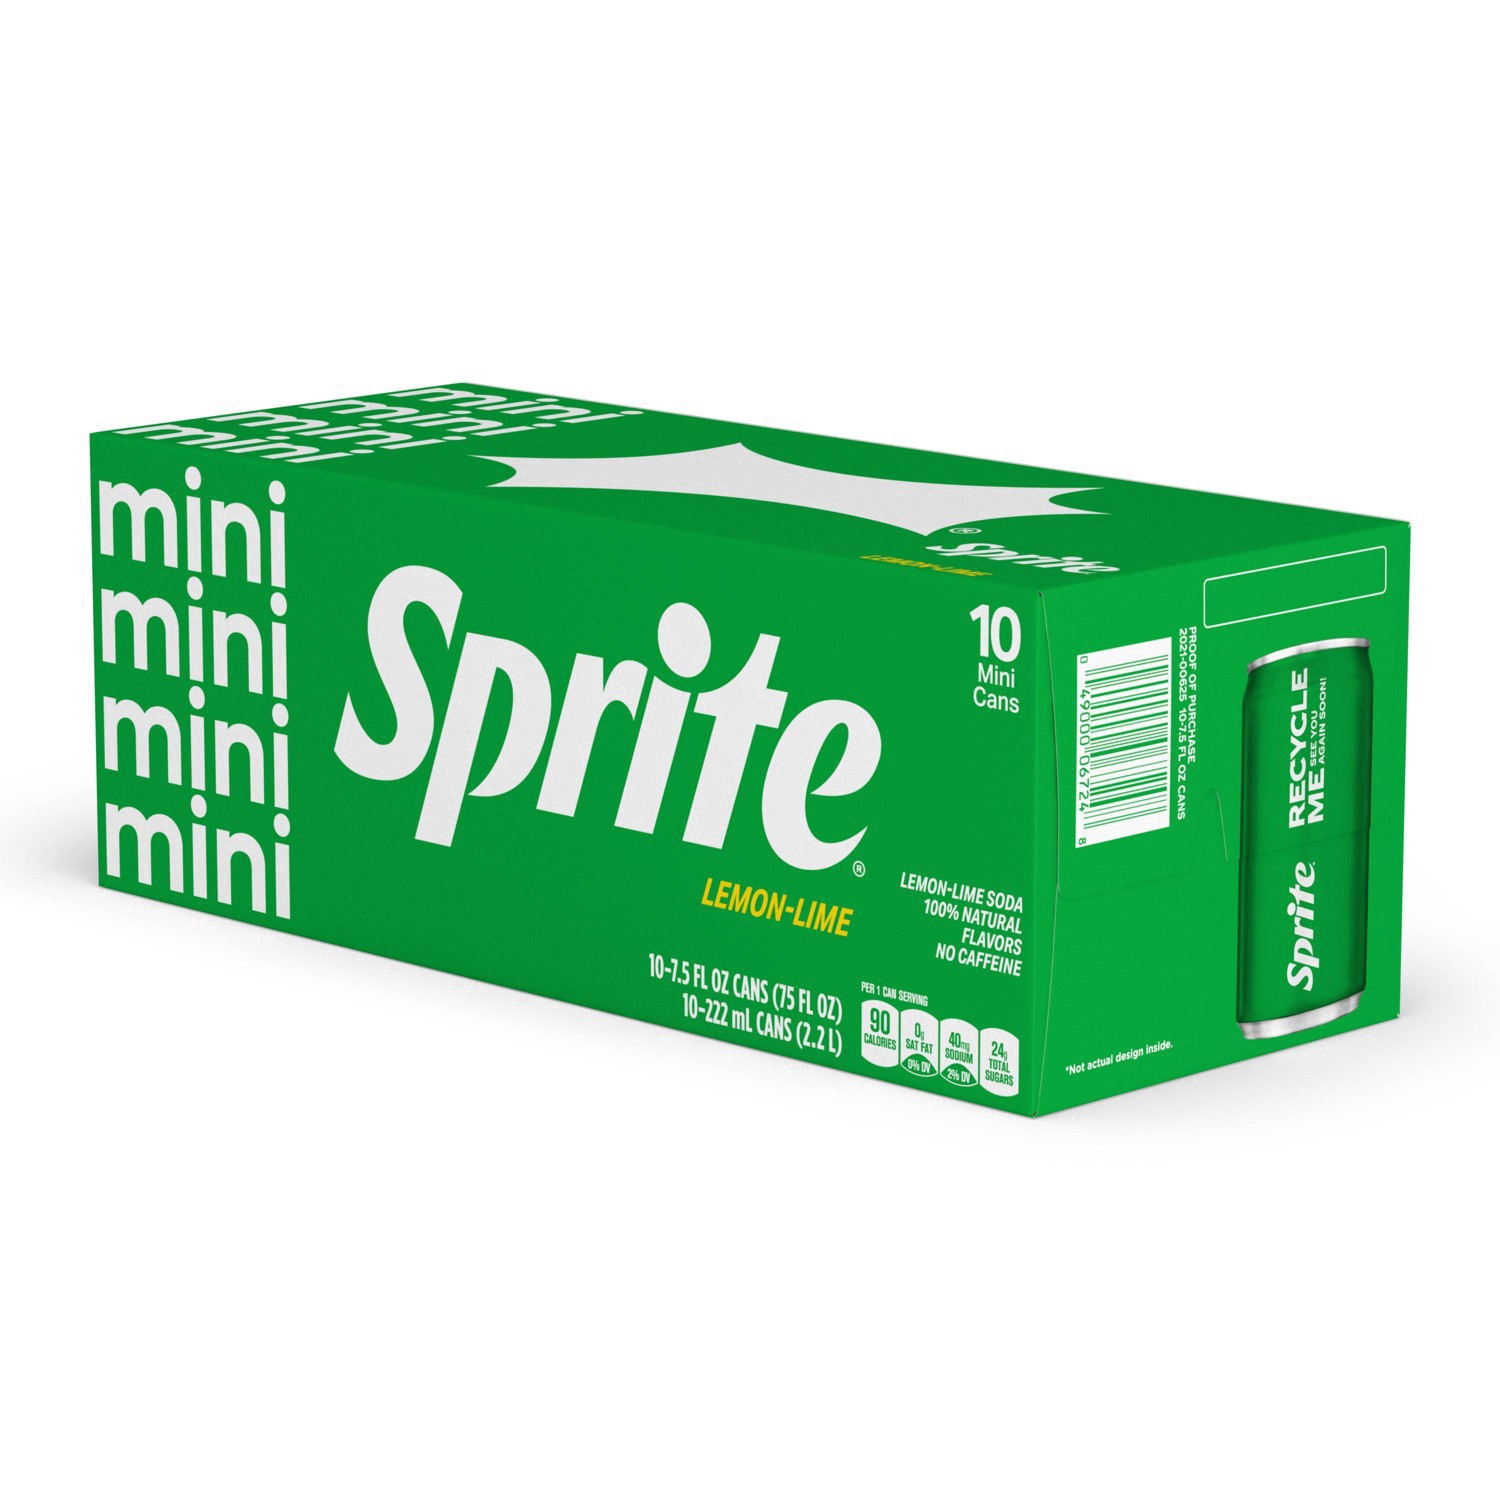 slide 45 of 91, Sprite Lemon Lime Soda Soft Drinks, 7.5 fl oz, 10 Pack, 